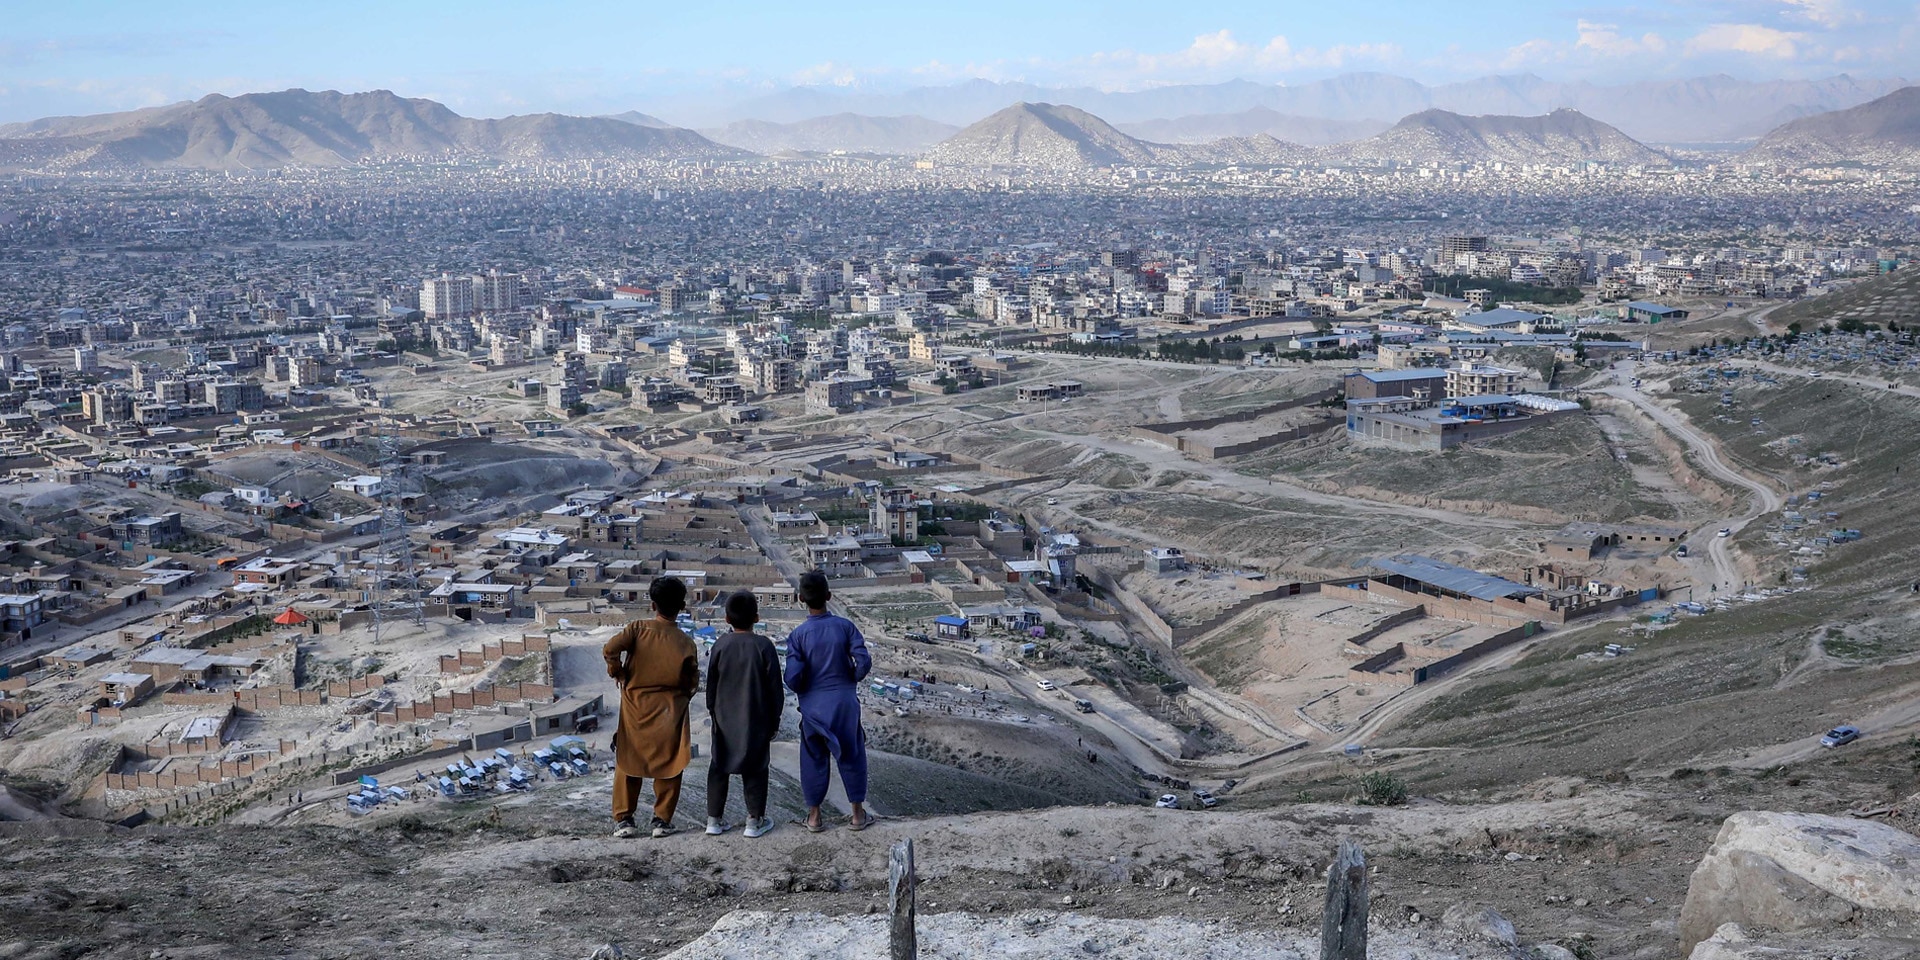  Trois enfants regardent la capitale afghane Kaboul depuis une colline.